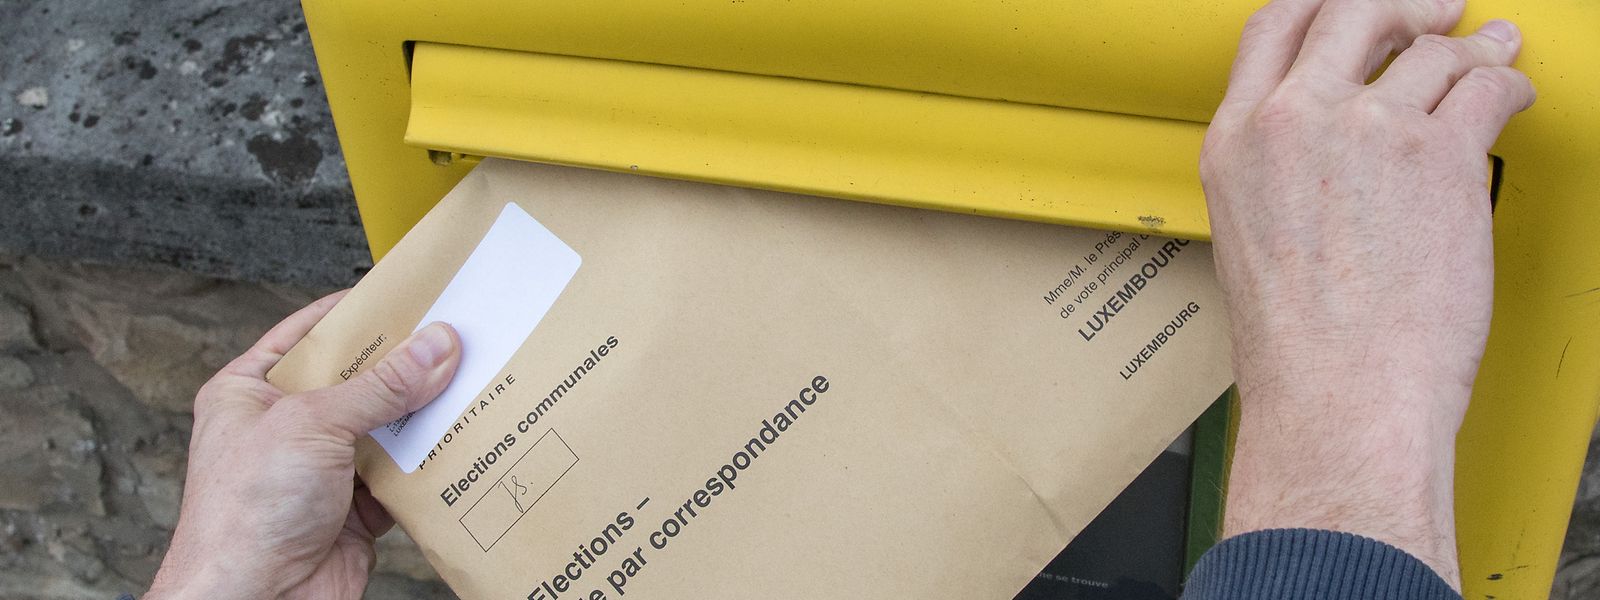 Für Einberufungsschreiben, die in Luxemburg empfangen werden, endet die Frist für die Beantragung der Briefwahl am 17. Mai.